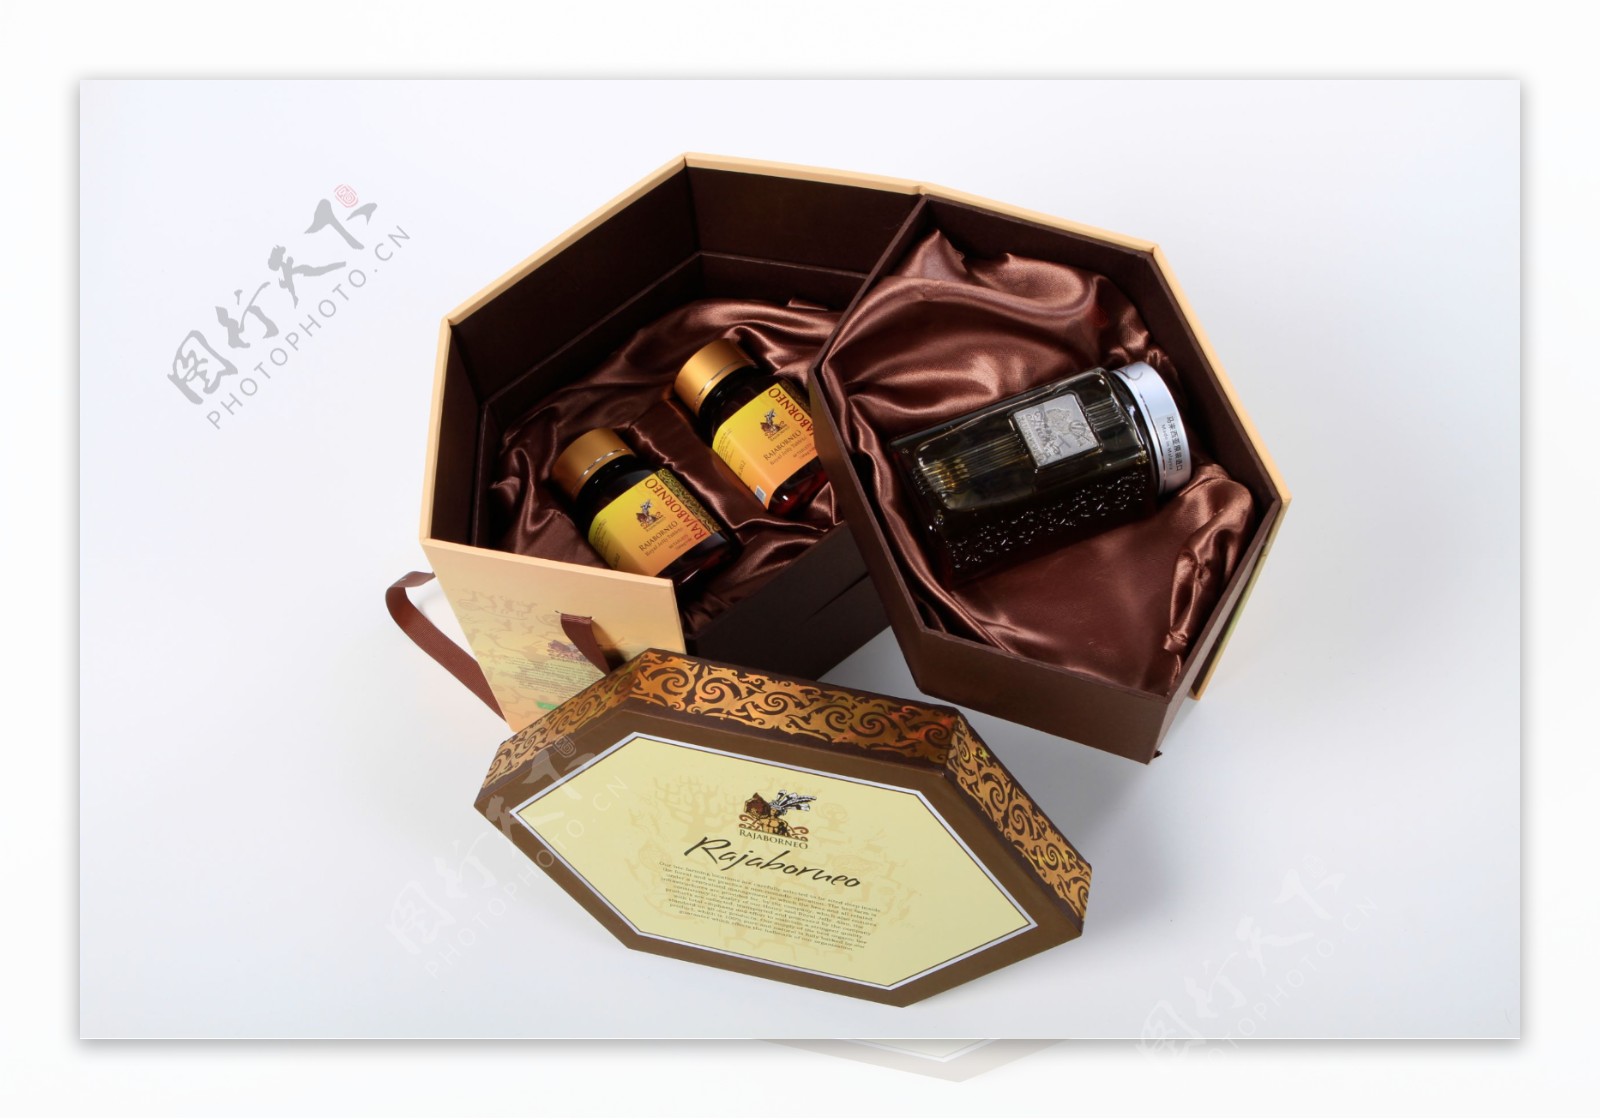 婆罗皇蜂蜜礼盒图片